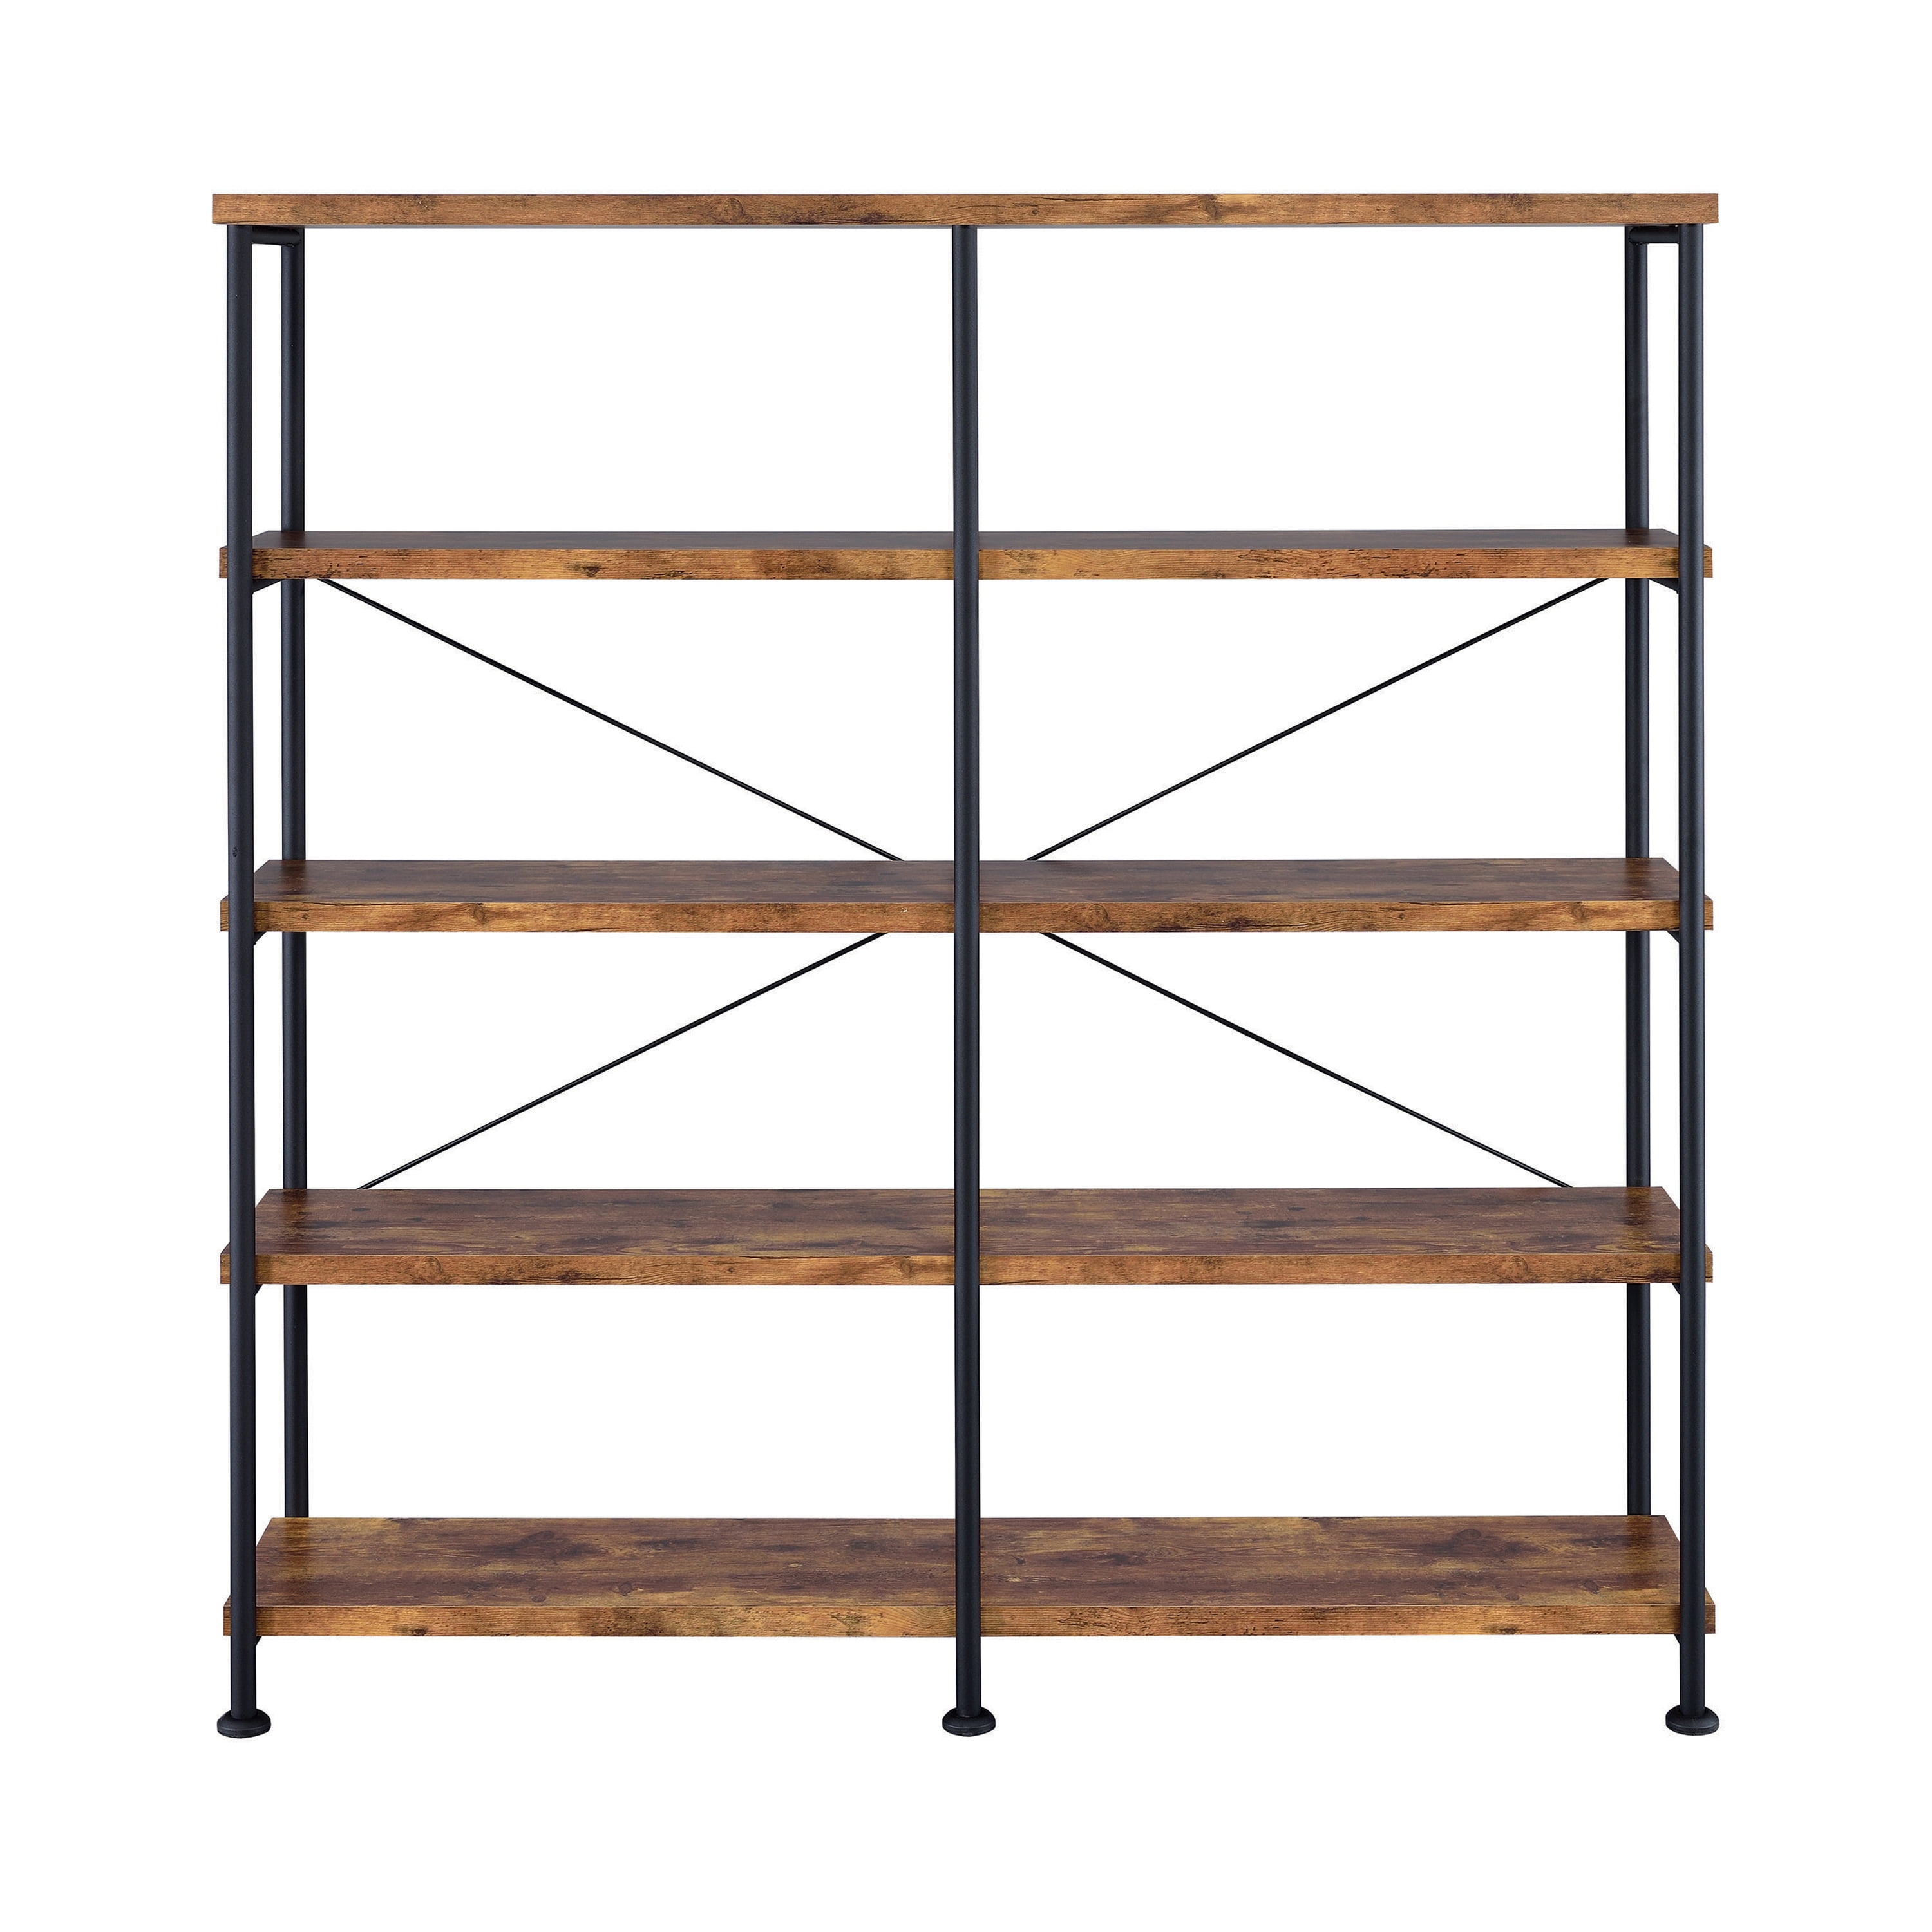 show original title Details about   Bookcase Kitchen Shelf Shelving Unit with 5 open shelf levels Vintage 180cm Wood 